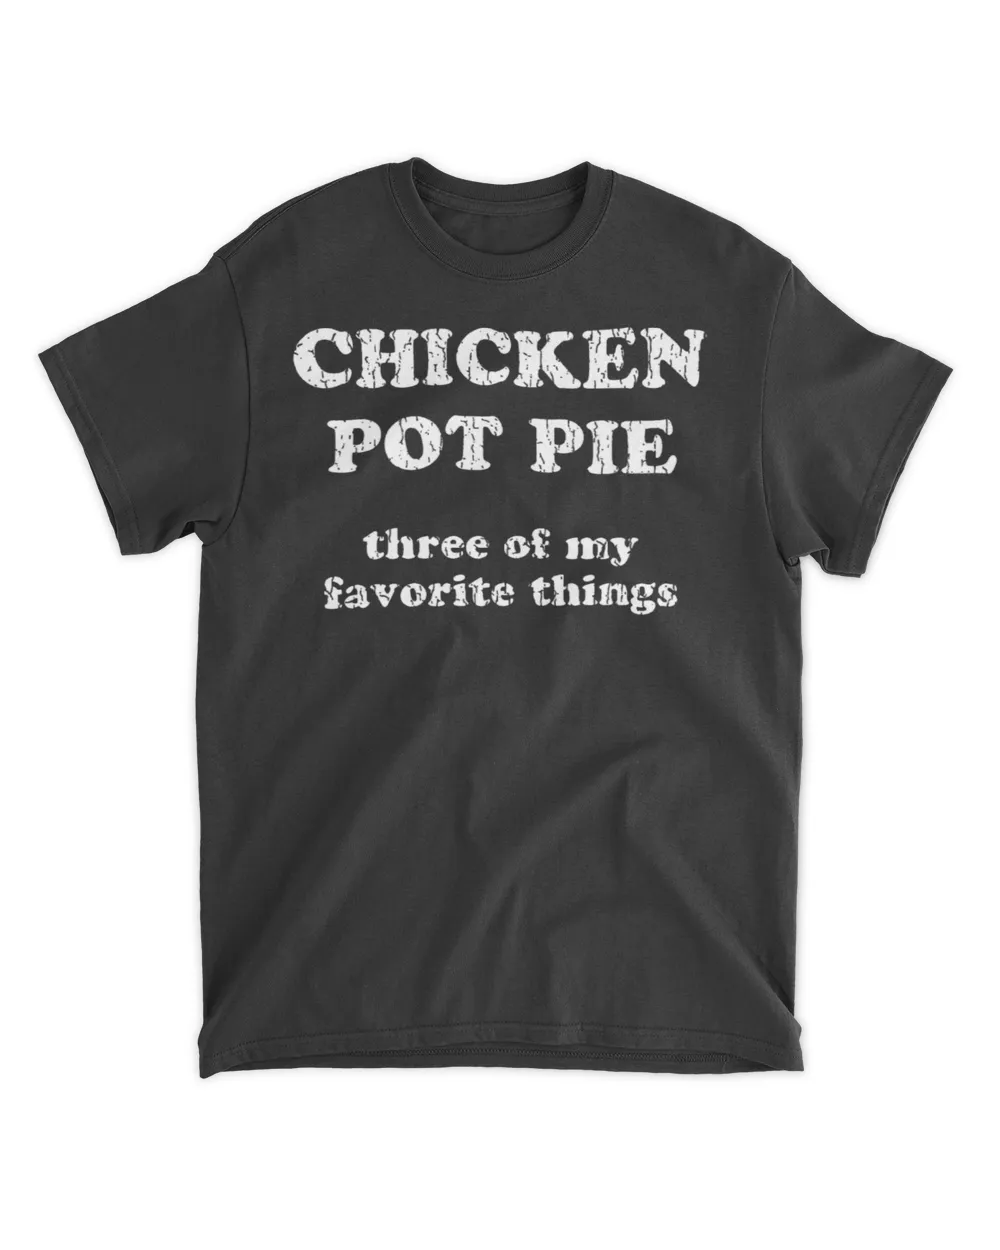  Chicken pot pie three of my favorite things shirt